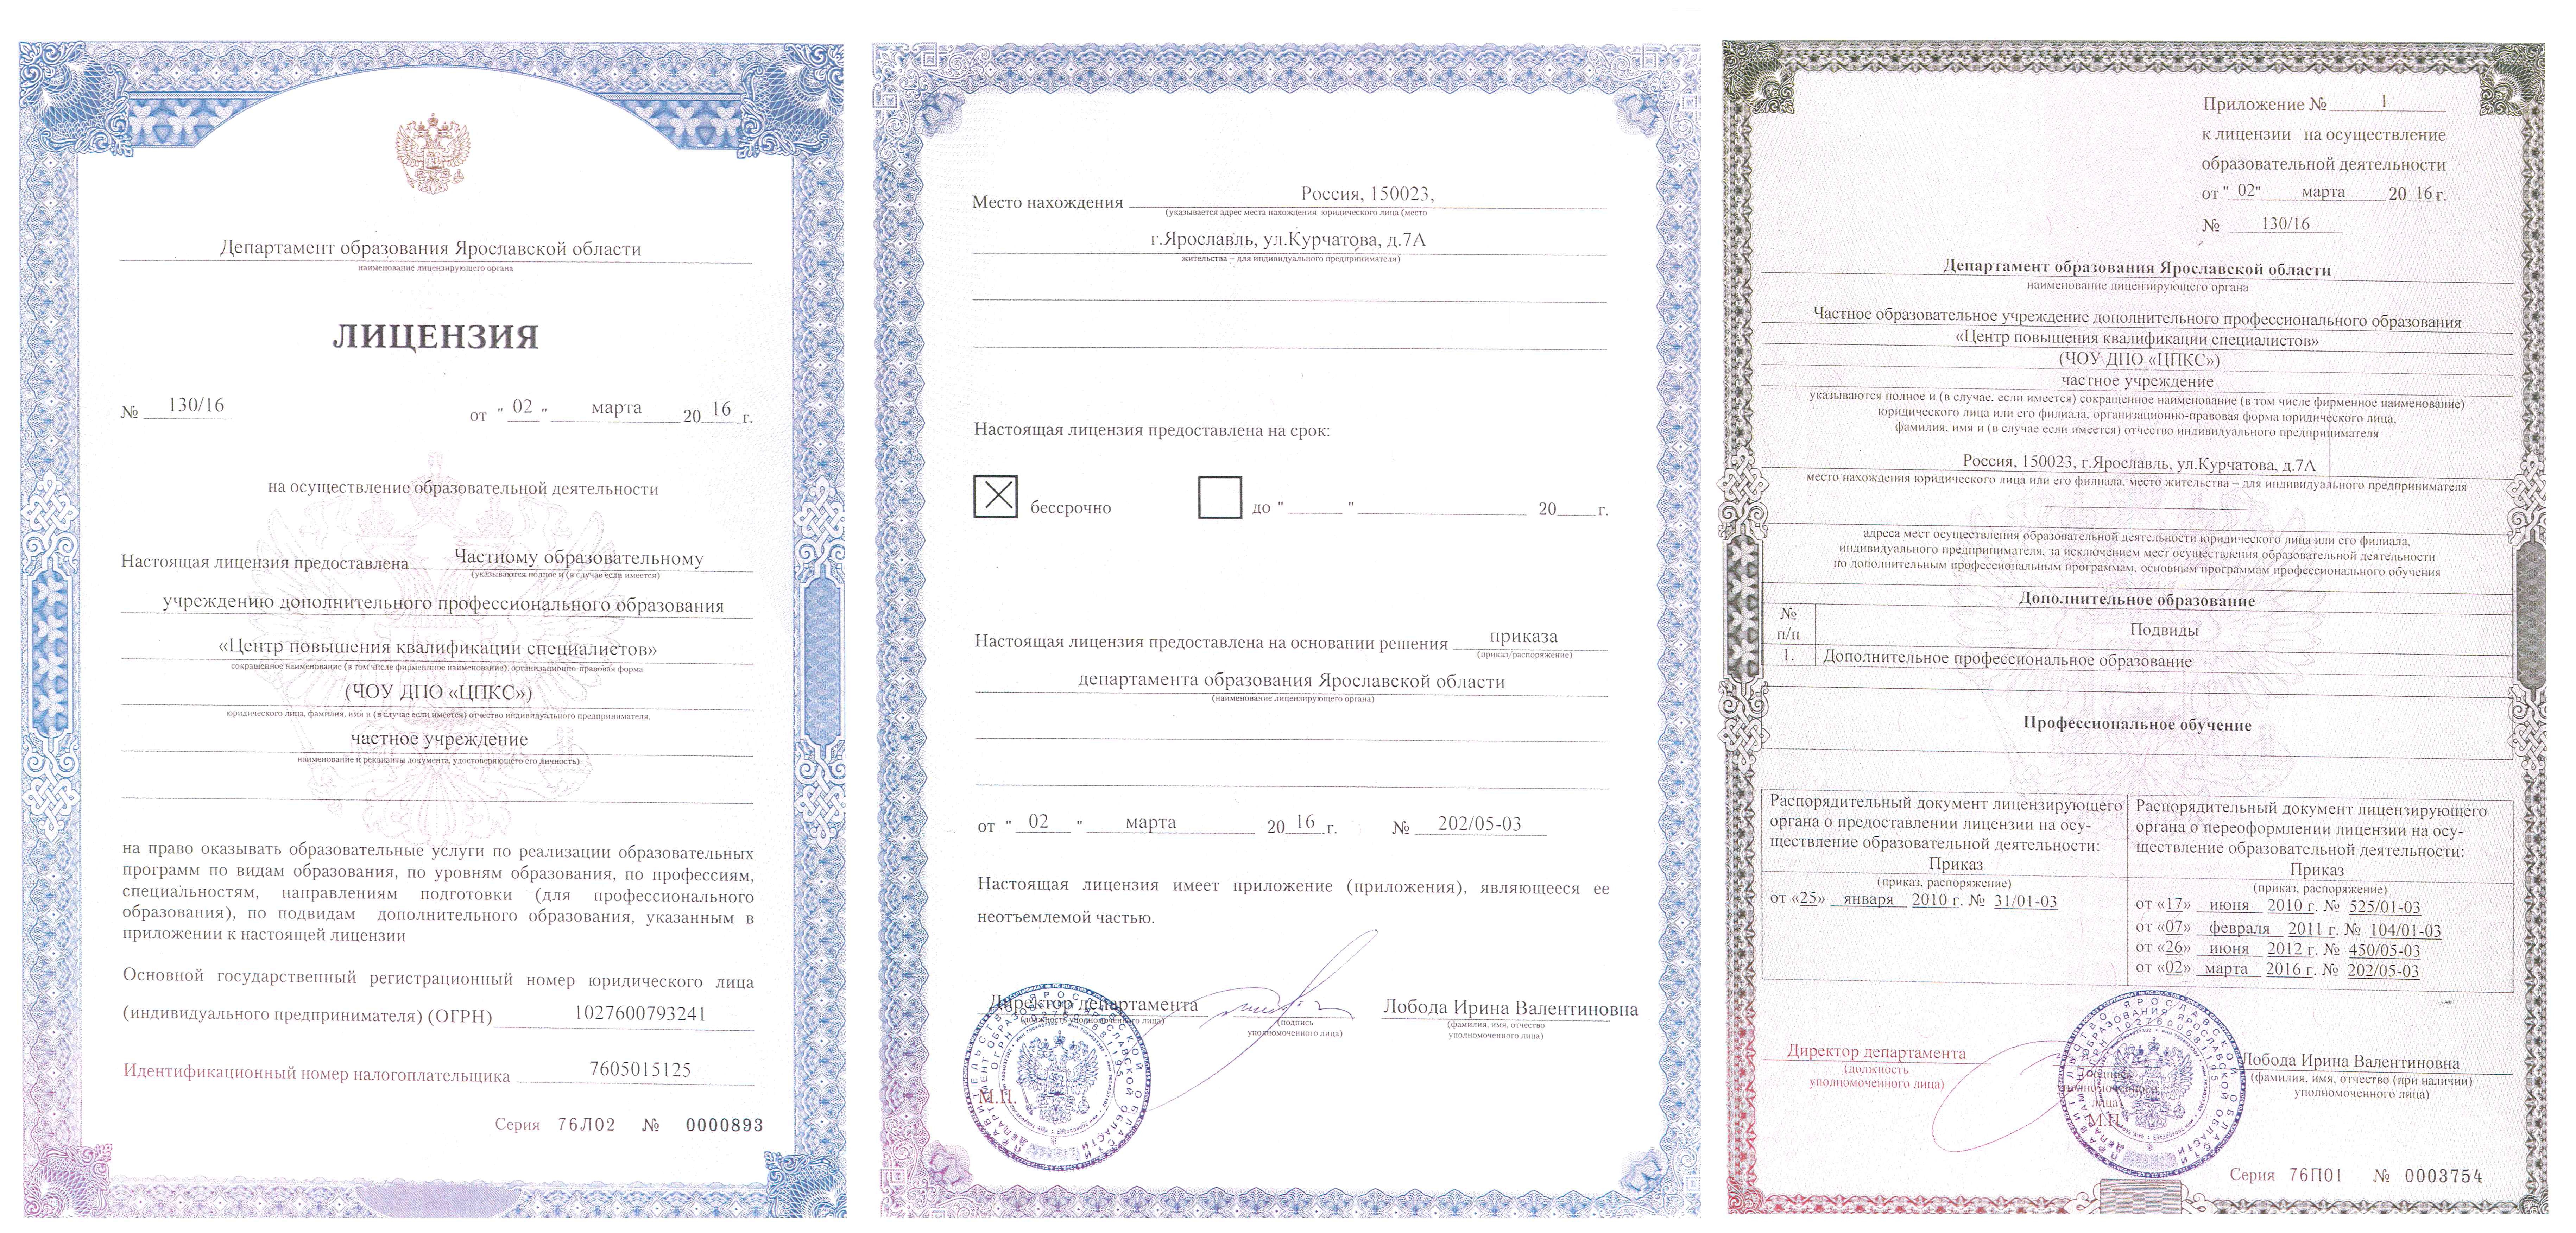 Департамент образования москвы лицензия. Лицензия на дополнительное профессиональное образование. Лицензия документ. Лицензия Министерства образования.